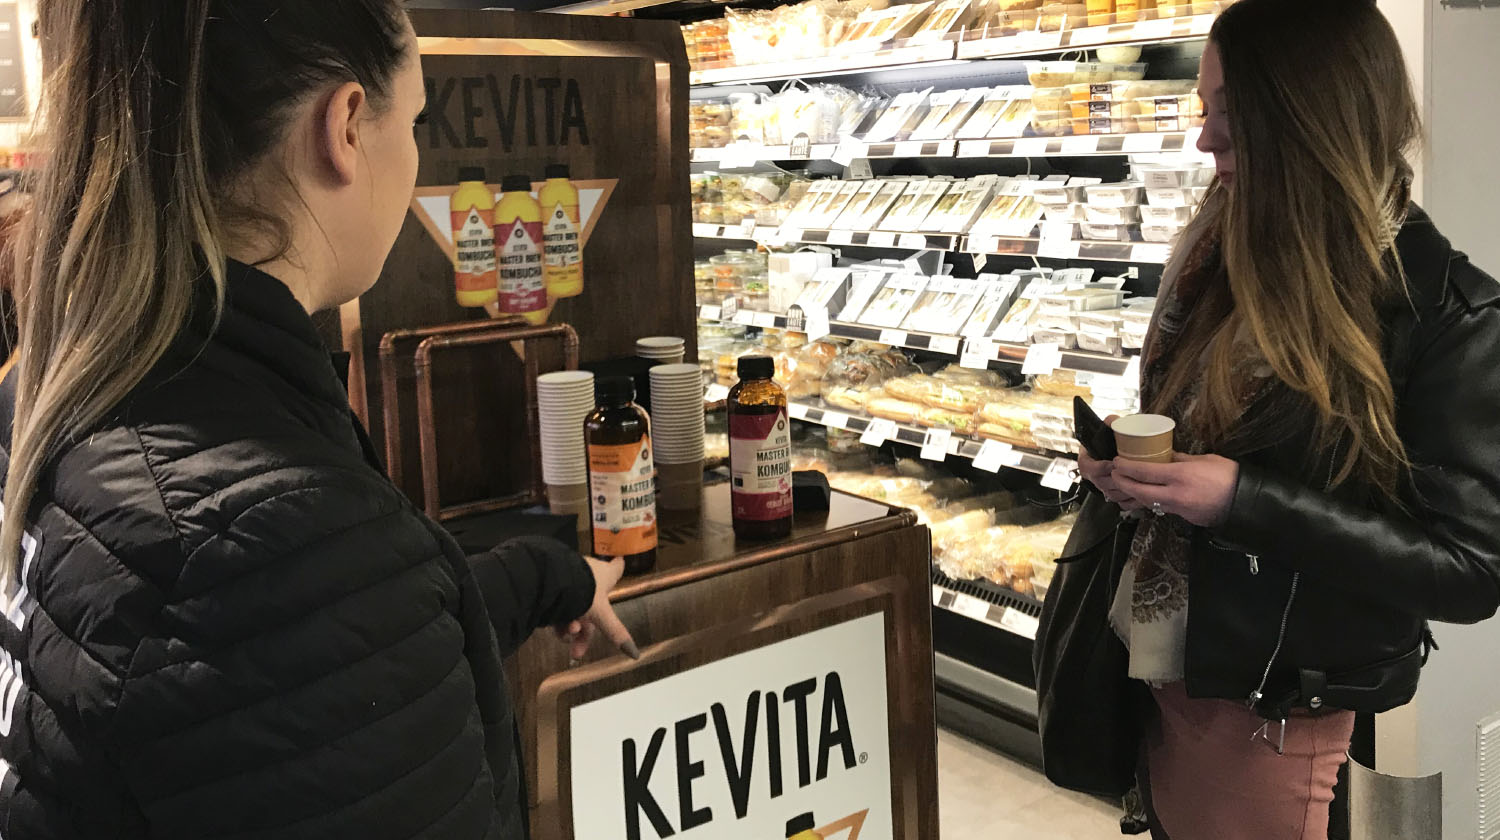 Kevita vous invite à déguster ses produits en magasin - Keemia Agence Hors média, Shopper Marketing, Evénementiel